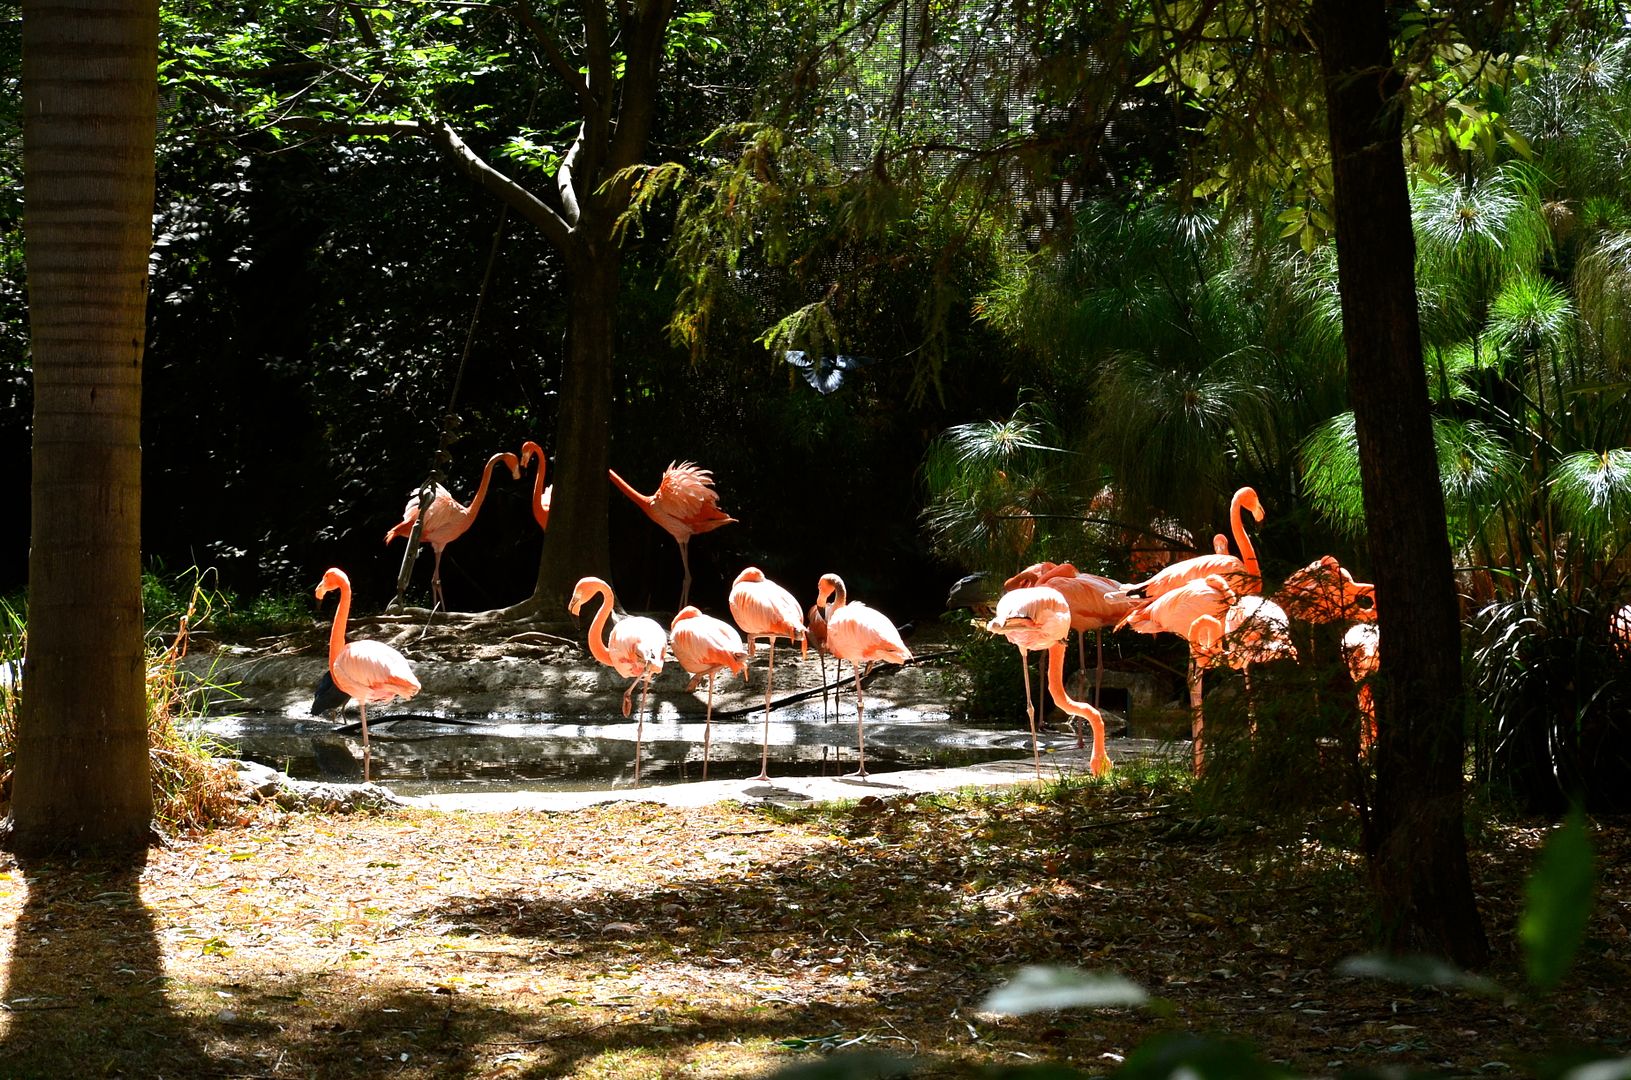 Chapultepec Zoo